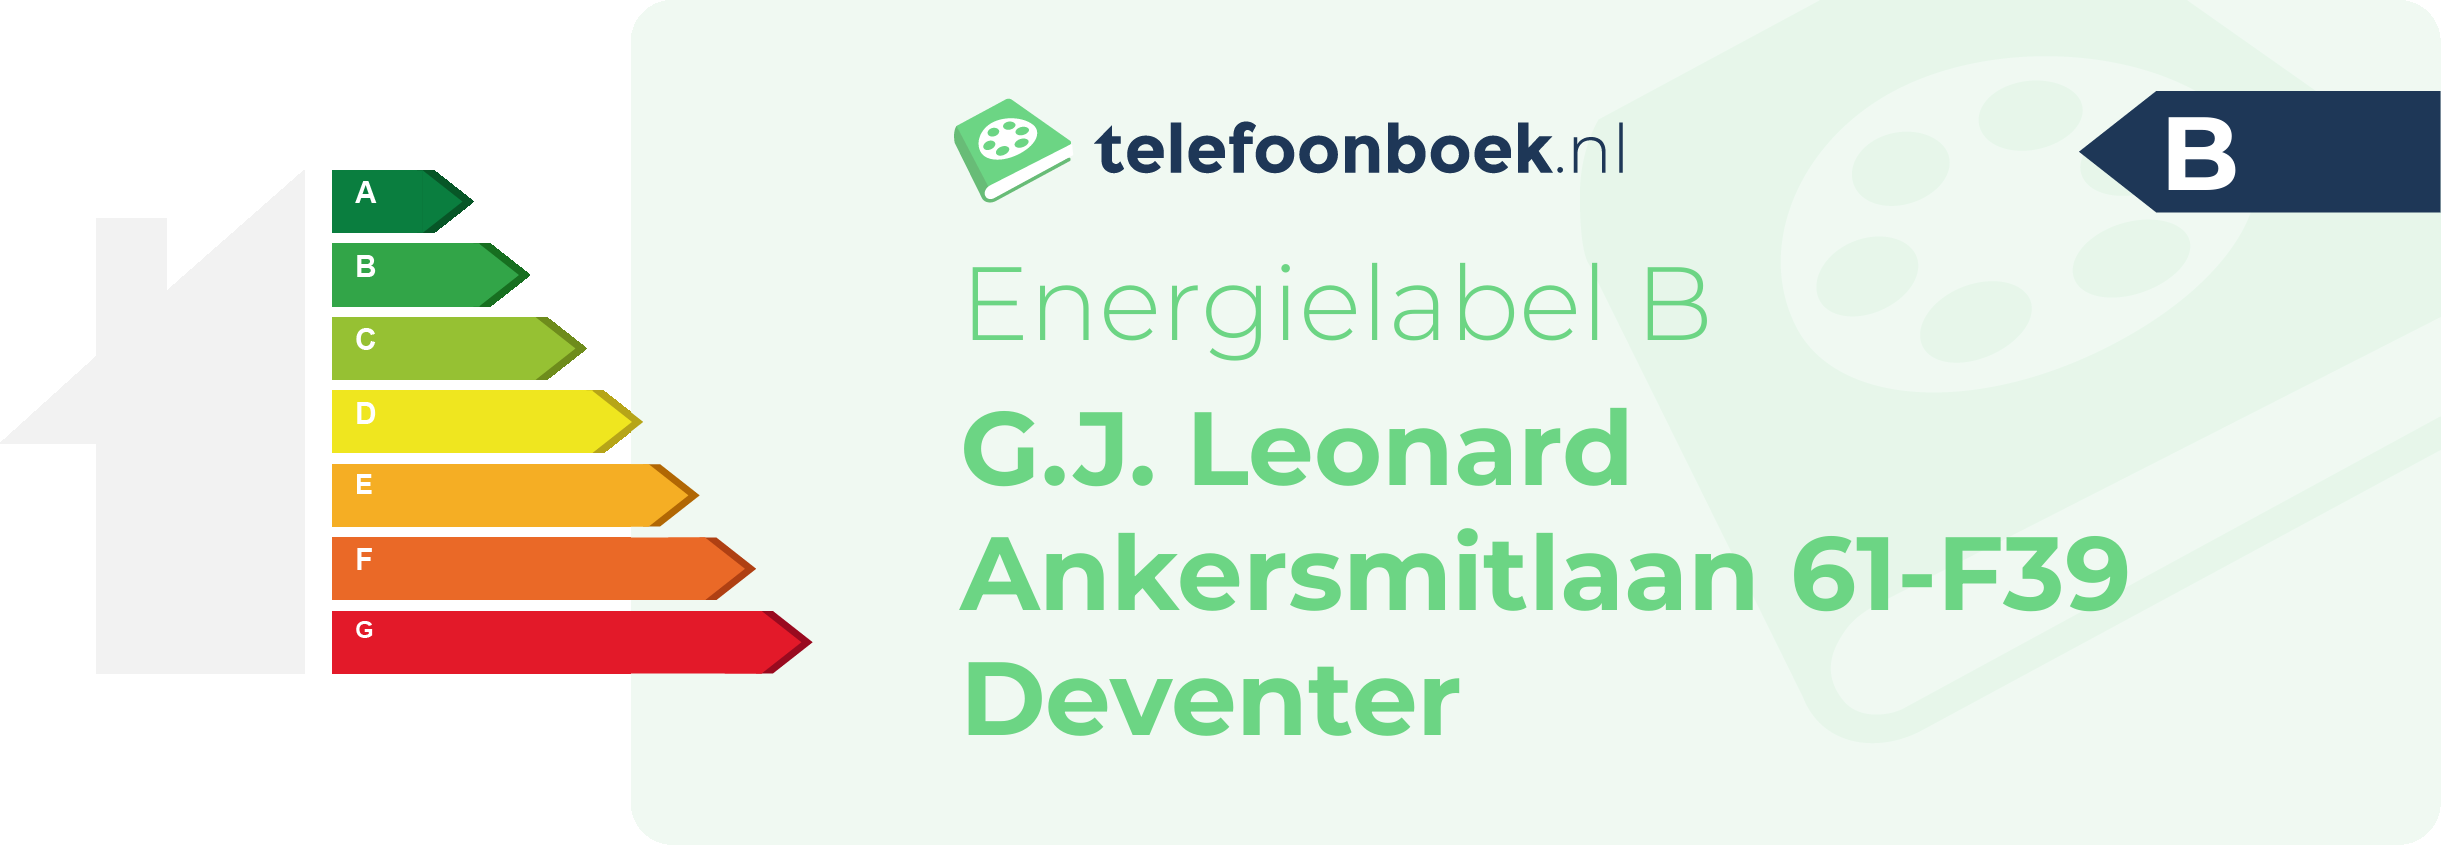 Energielabel G.J. Leonard Ankersmitlaan 61-F39 Deventer